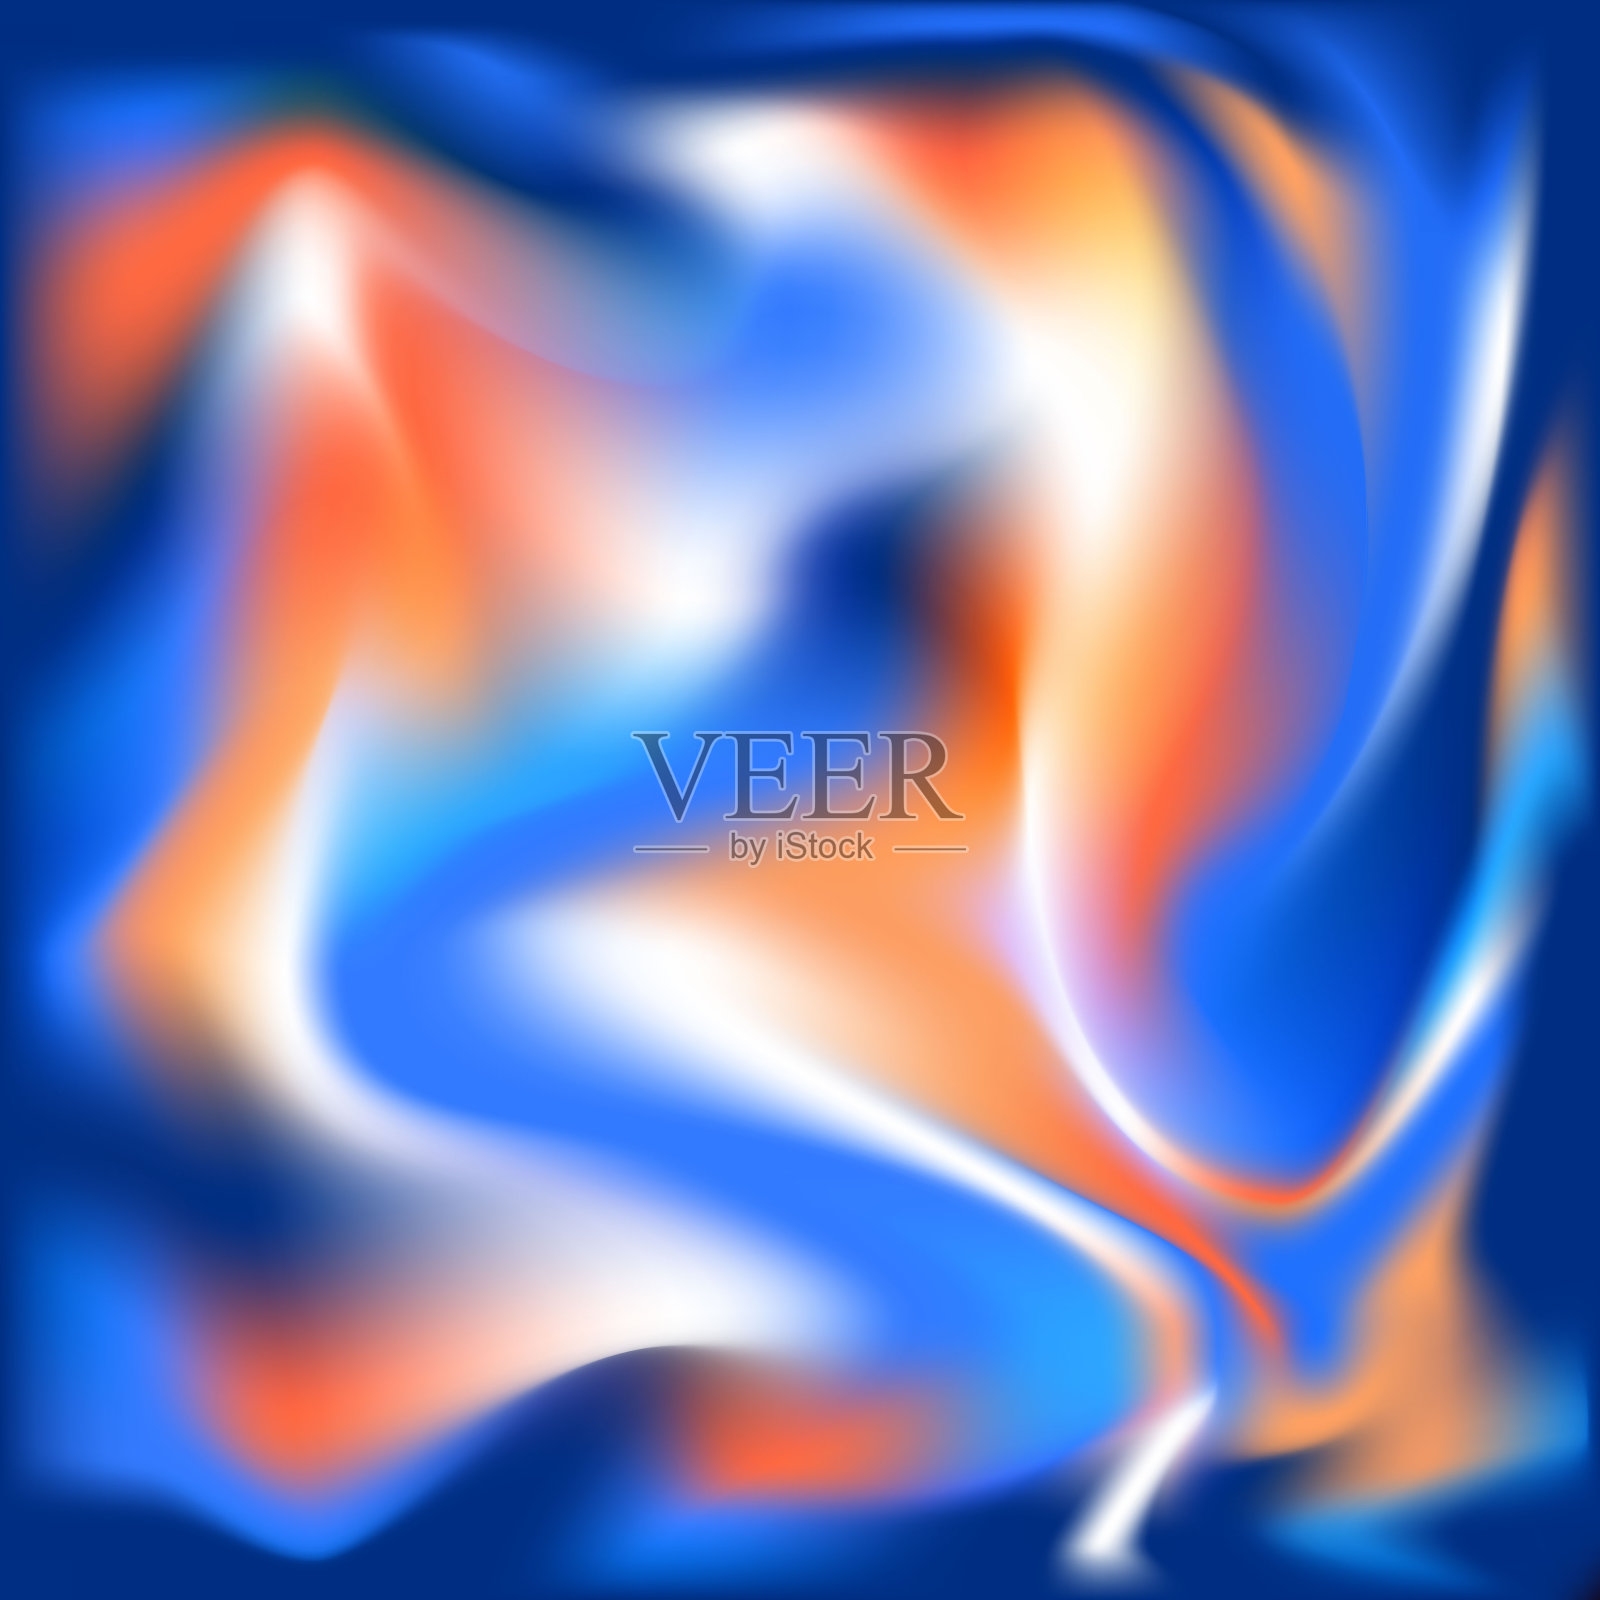 模糊液体波浪全息丝绸彩色抽象柔和充满活力红蓝橙颜色流动混合梯度背景插画图片素材